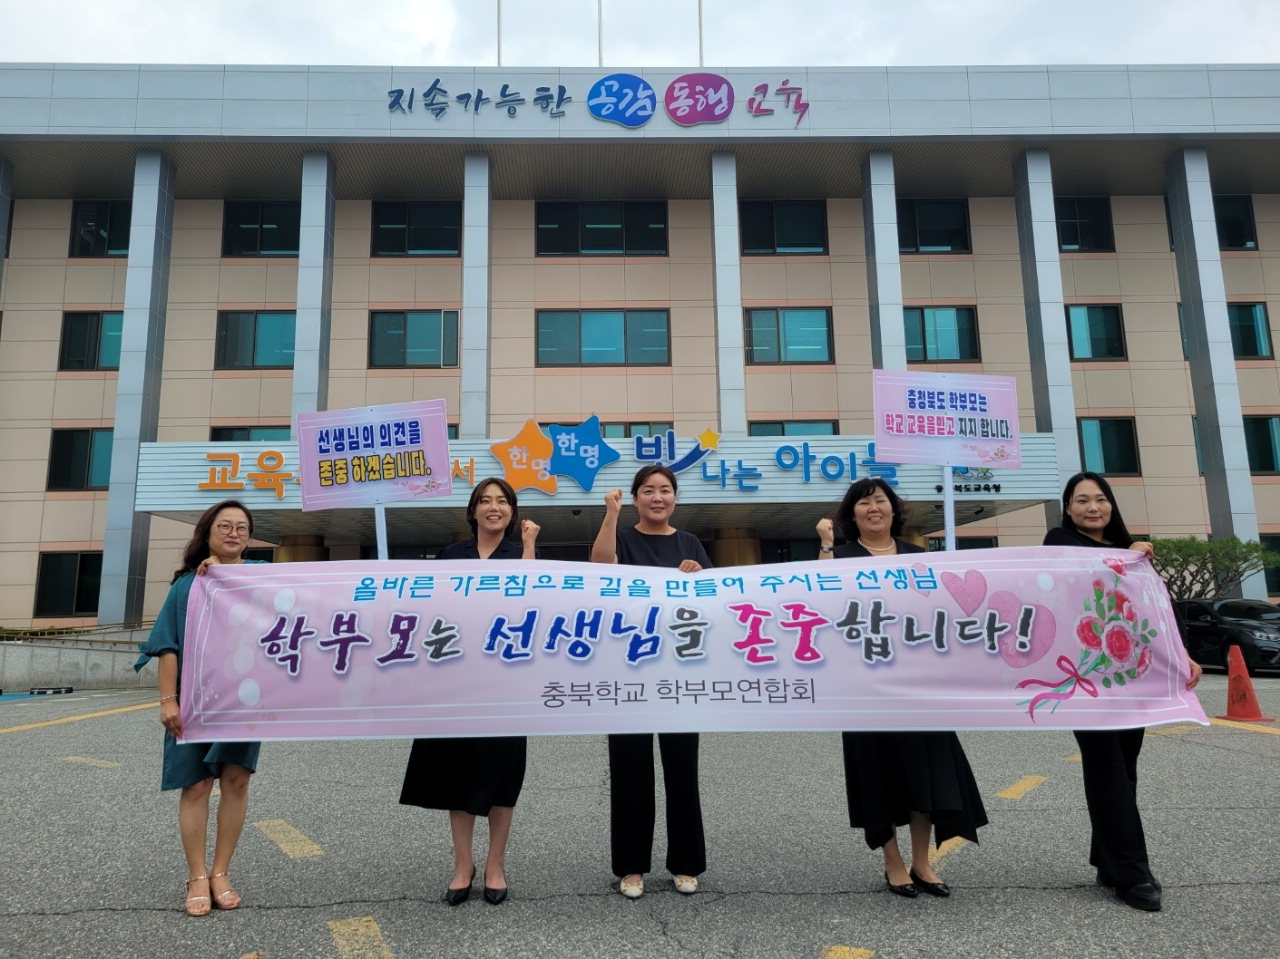 충청북도학교학부모연합회는 22일 도교육청 앞에서 선생님 존중 캠페인을 실시했다.